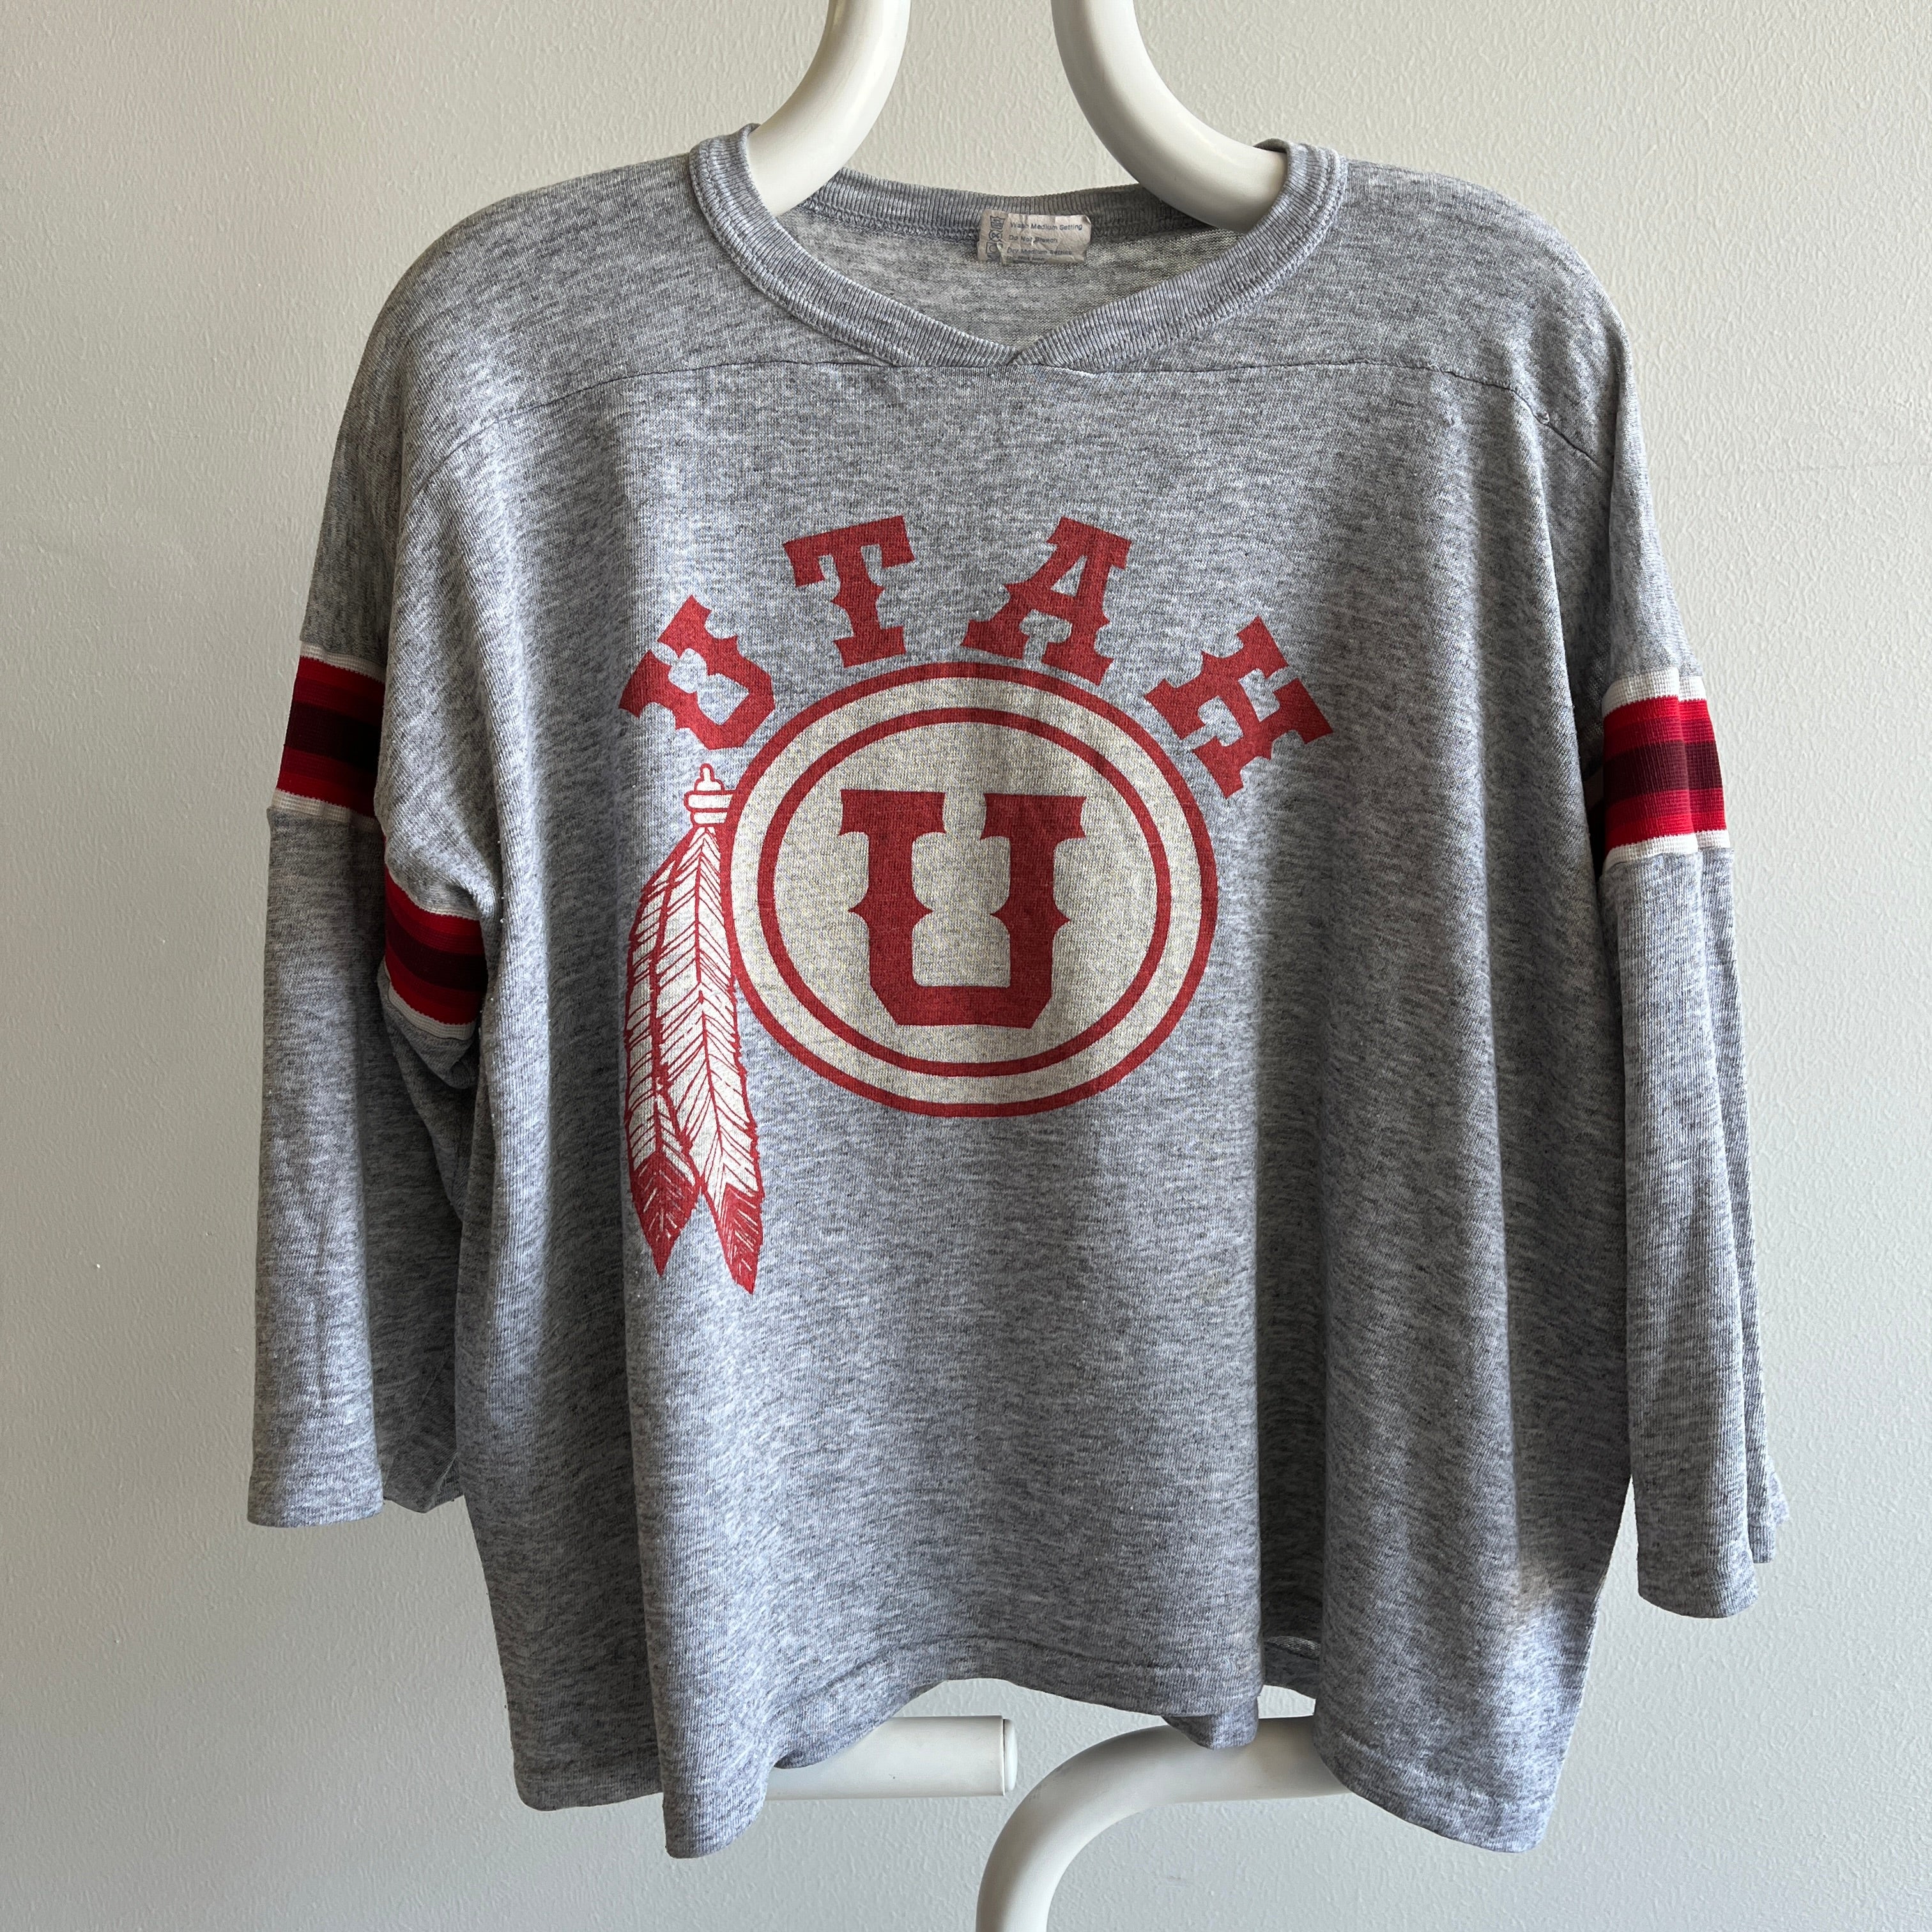 T-shirt de style football Utah des années 1970 - mince !